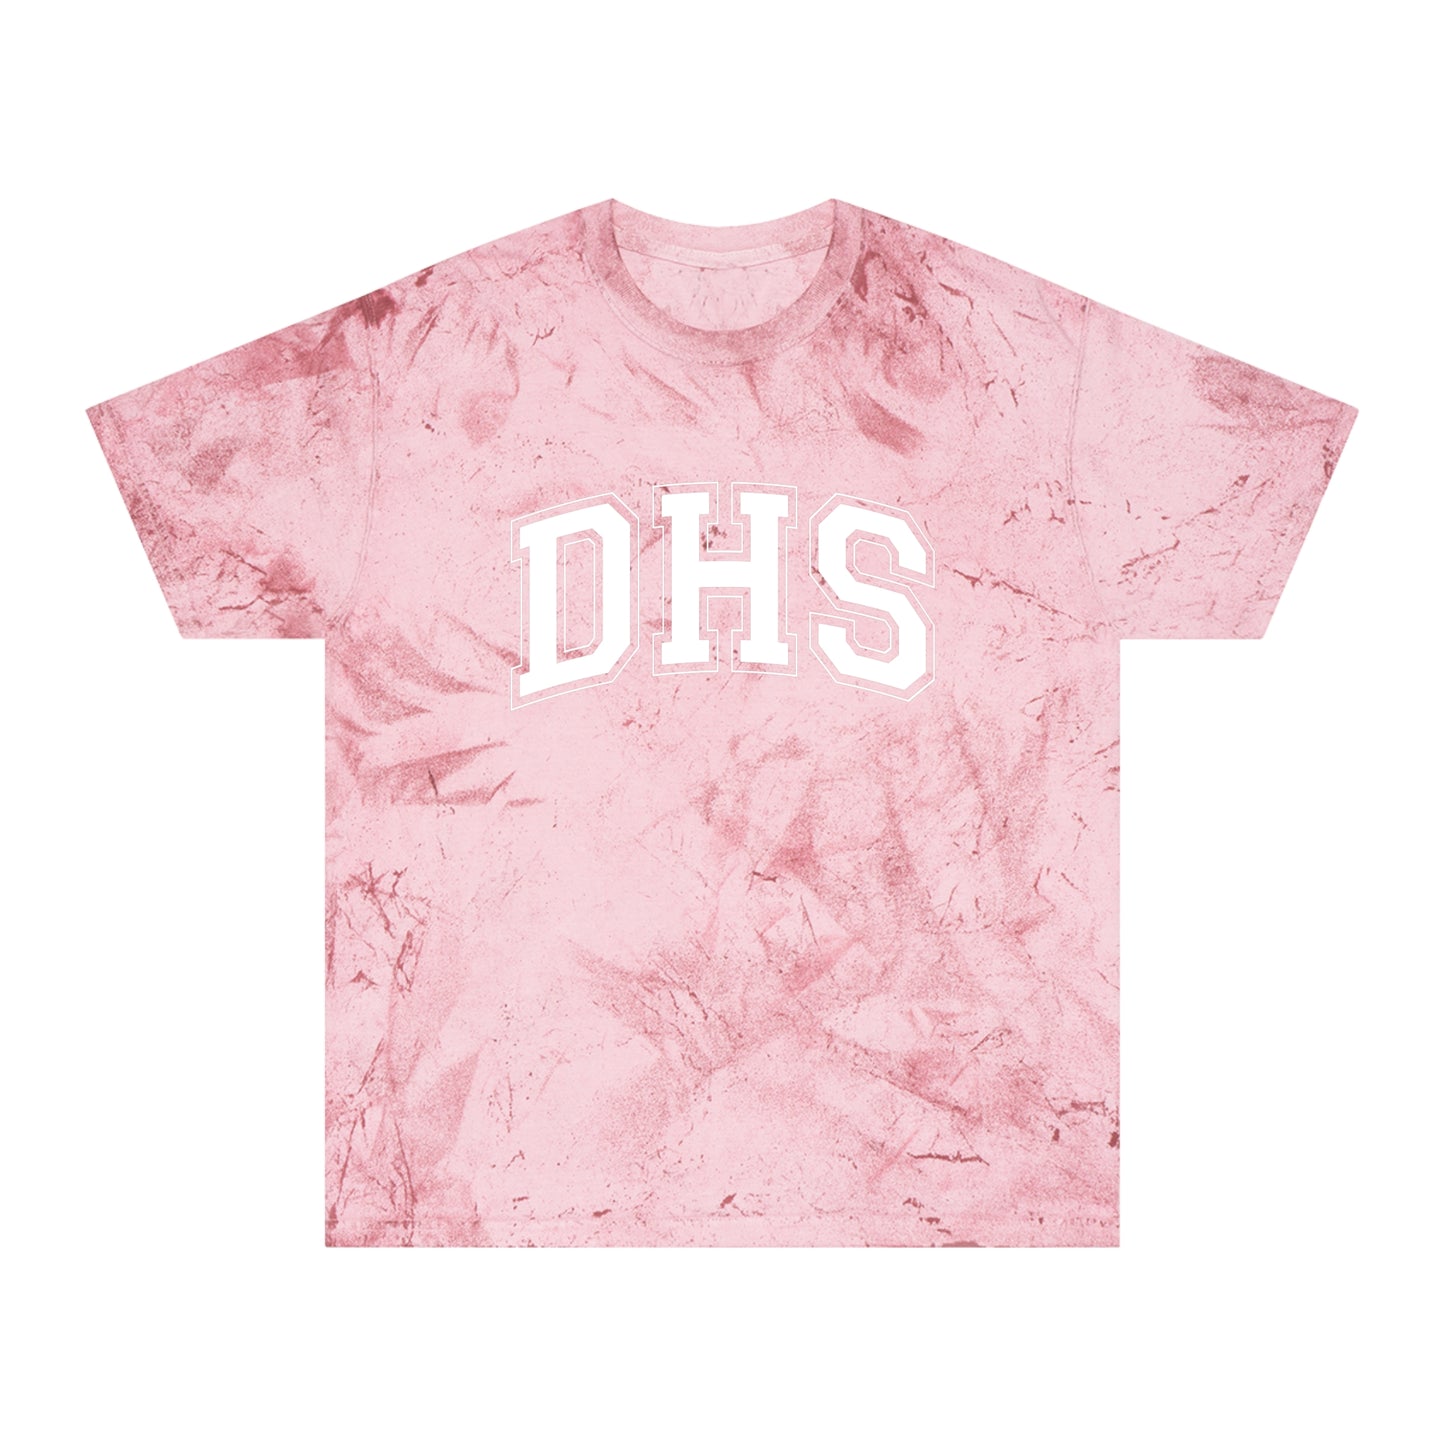 DHS (Desert Hot Springs) Premium Dye Bomb T-Shirt